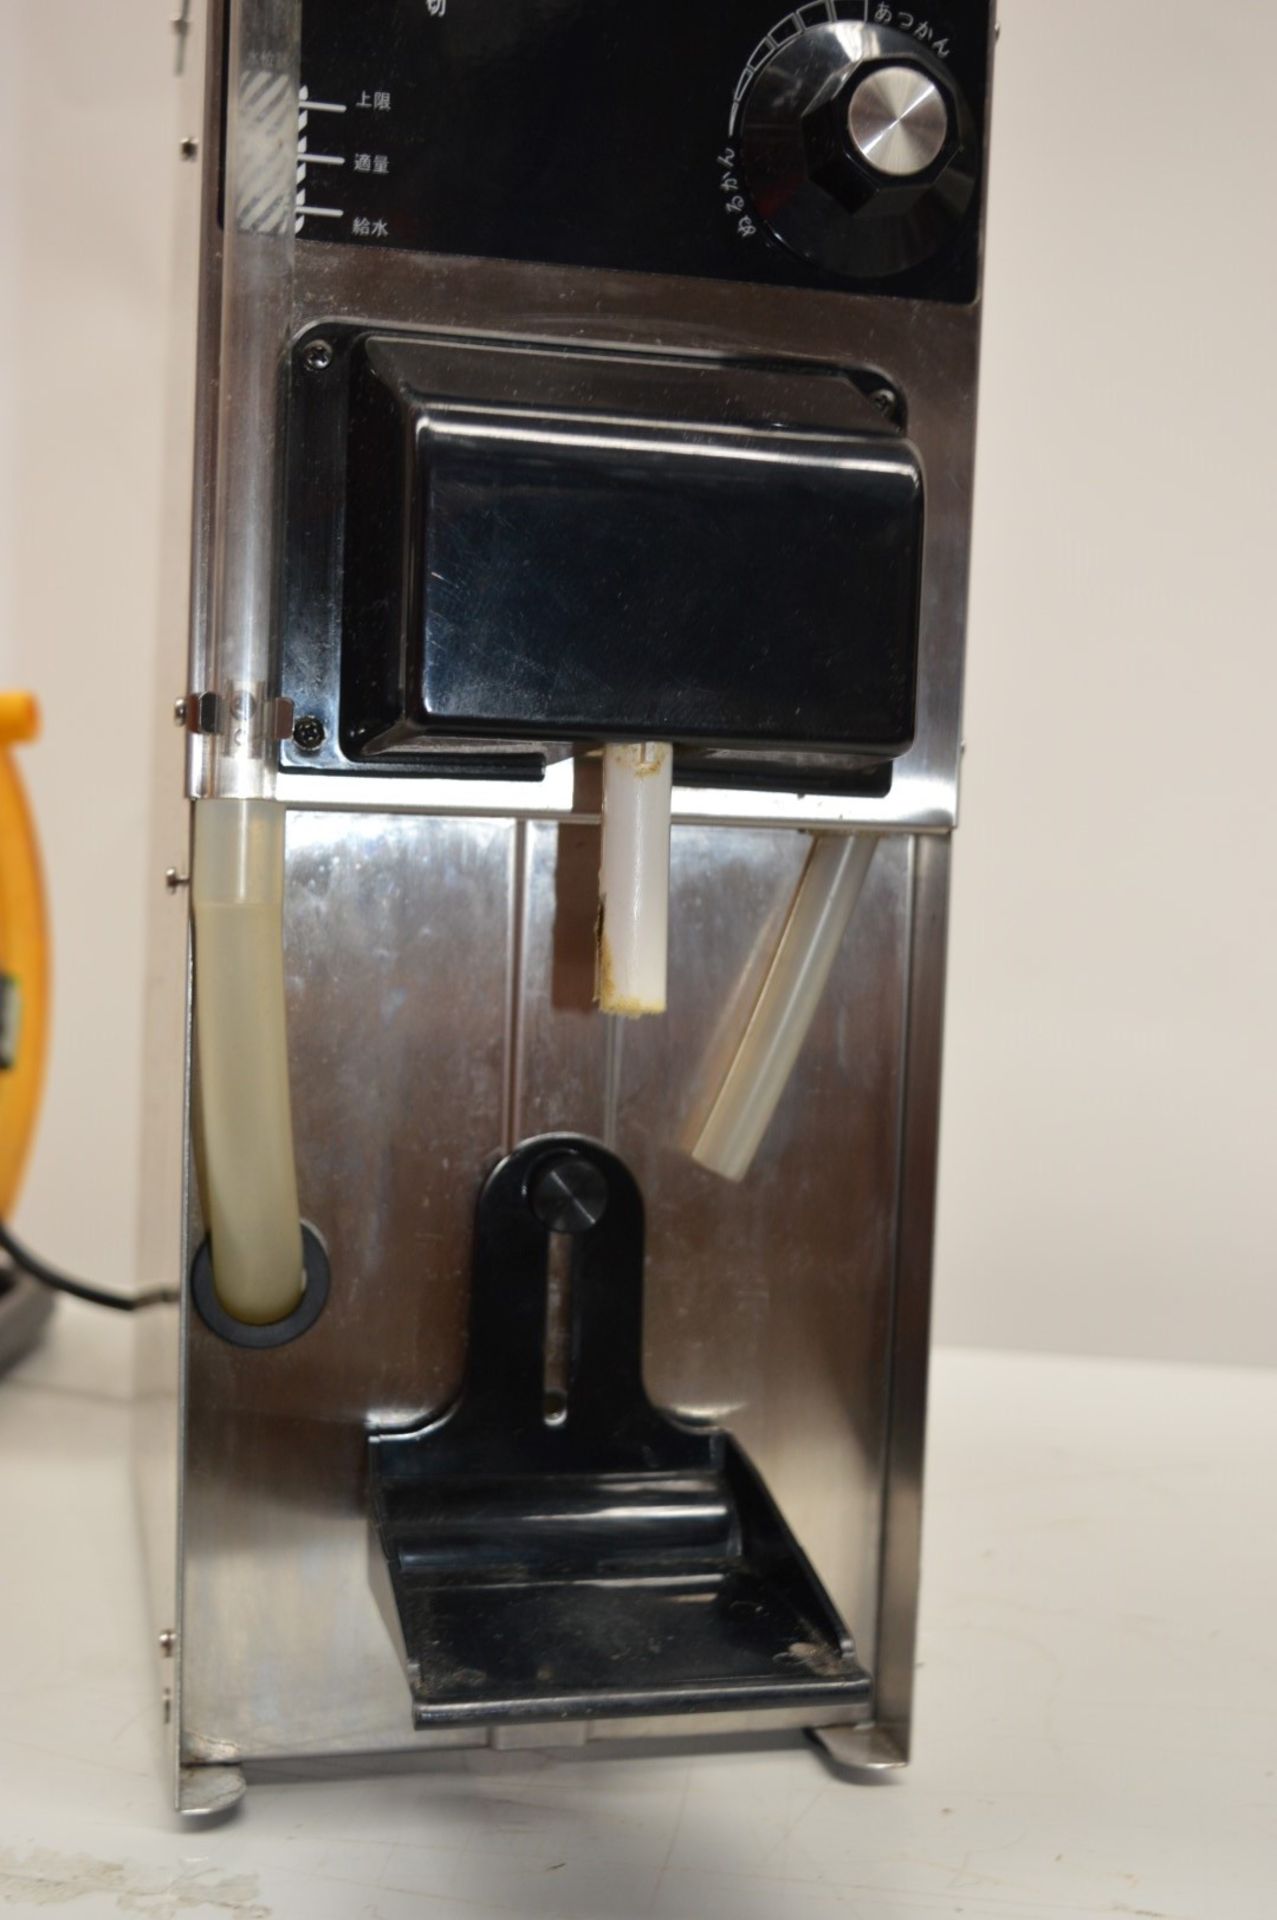 1 x Taji Ti-1 Sake Warmer Dispenser Machine - Japanese Sake Machine - CL011 - Ref JP013 - Compact - Image 4 of 6